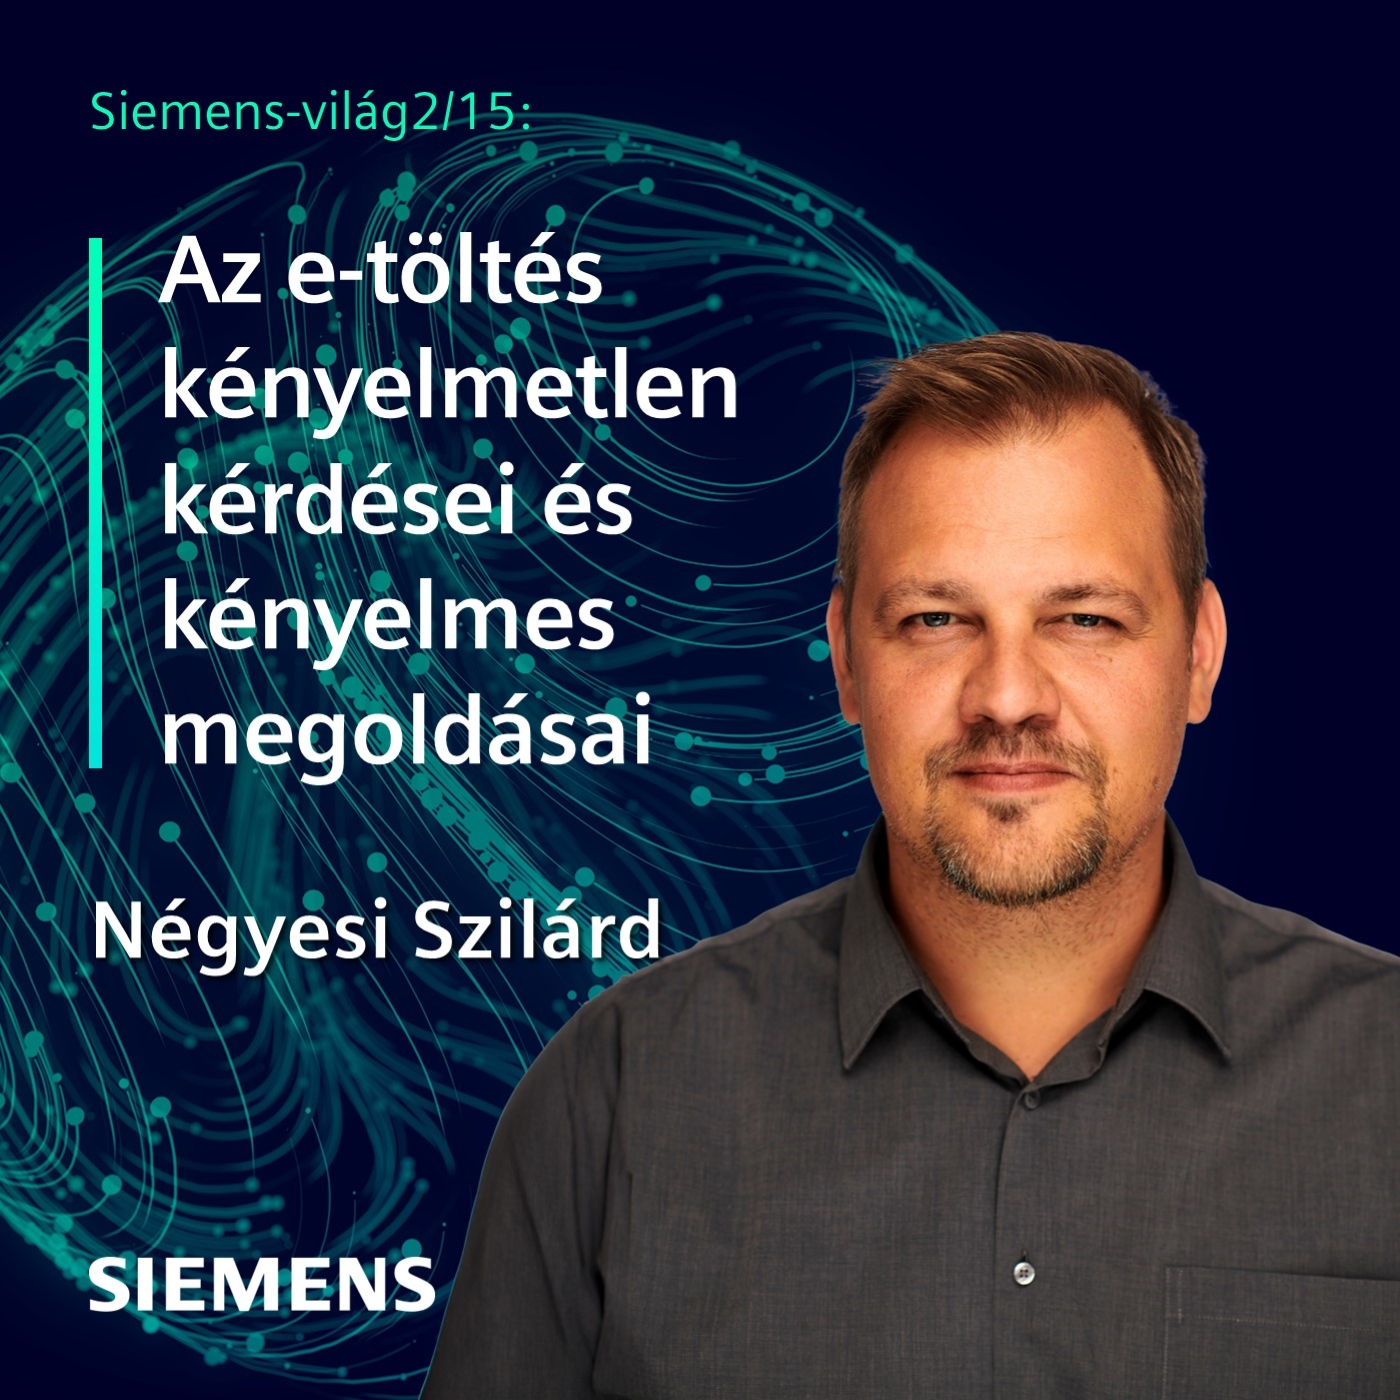 Siemens-világ